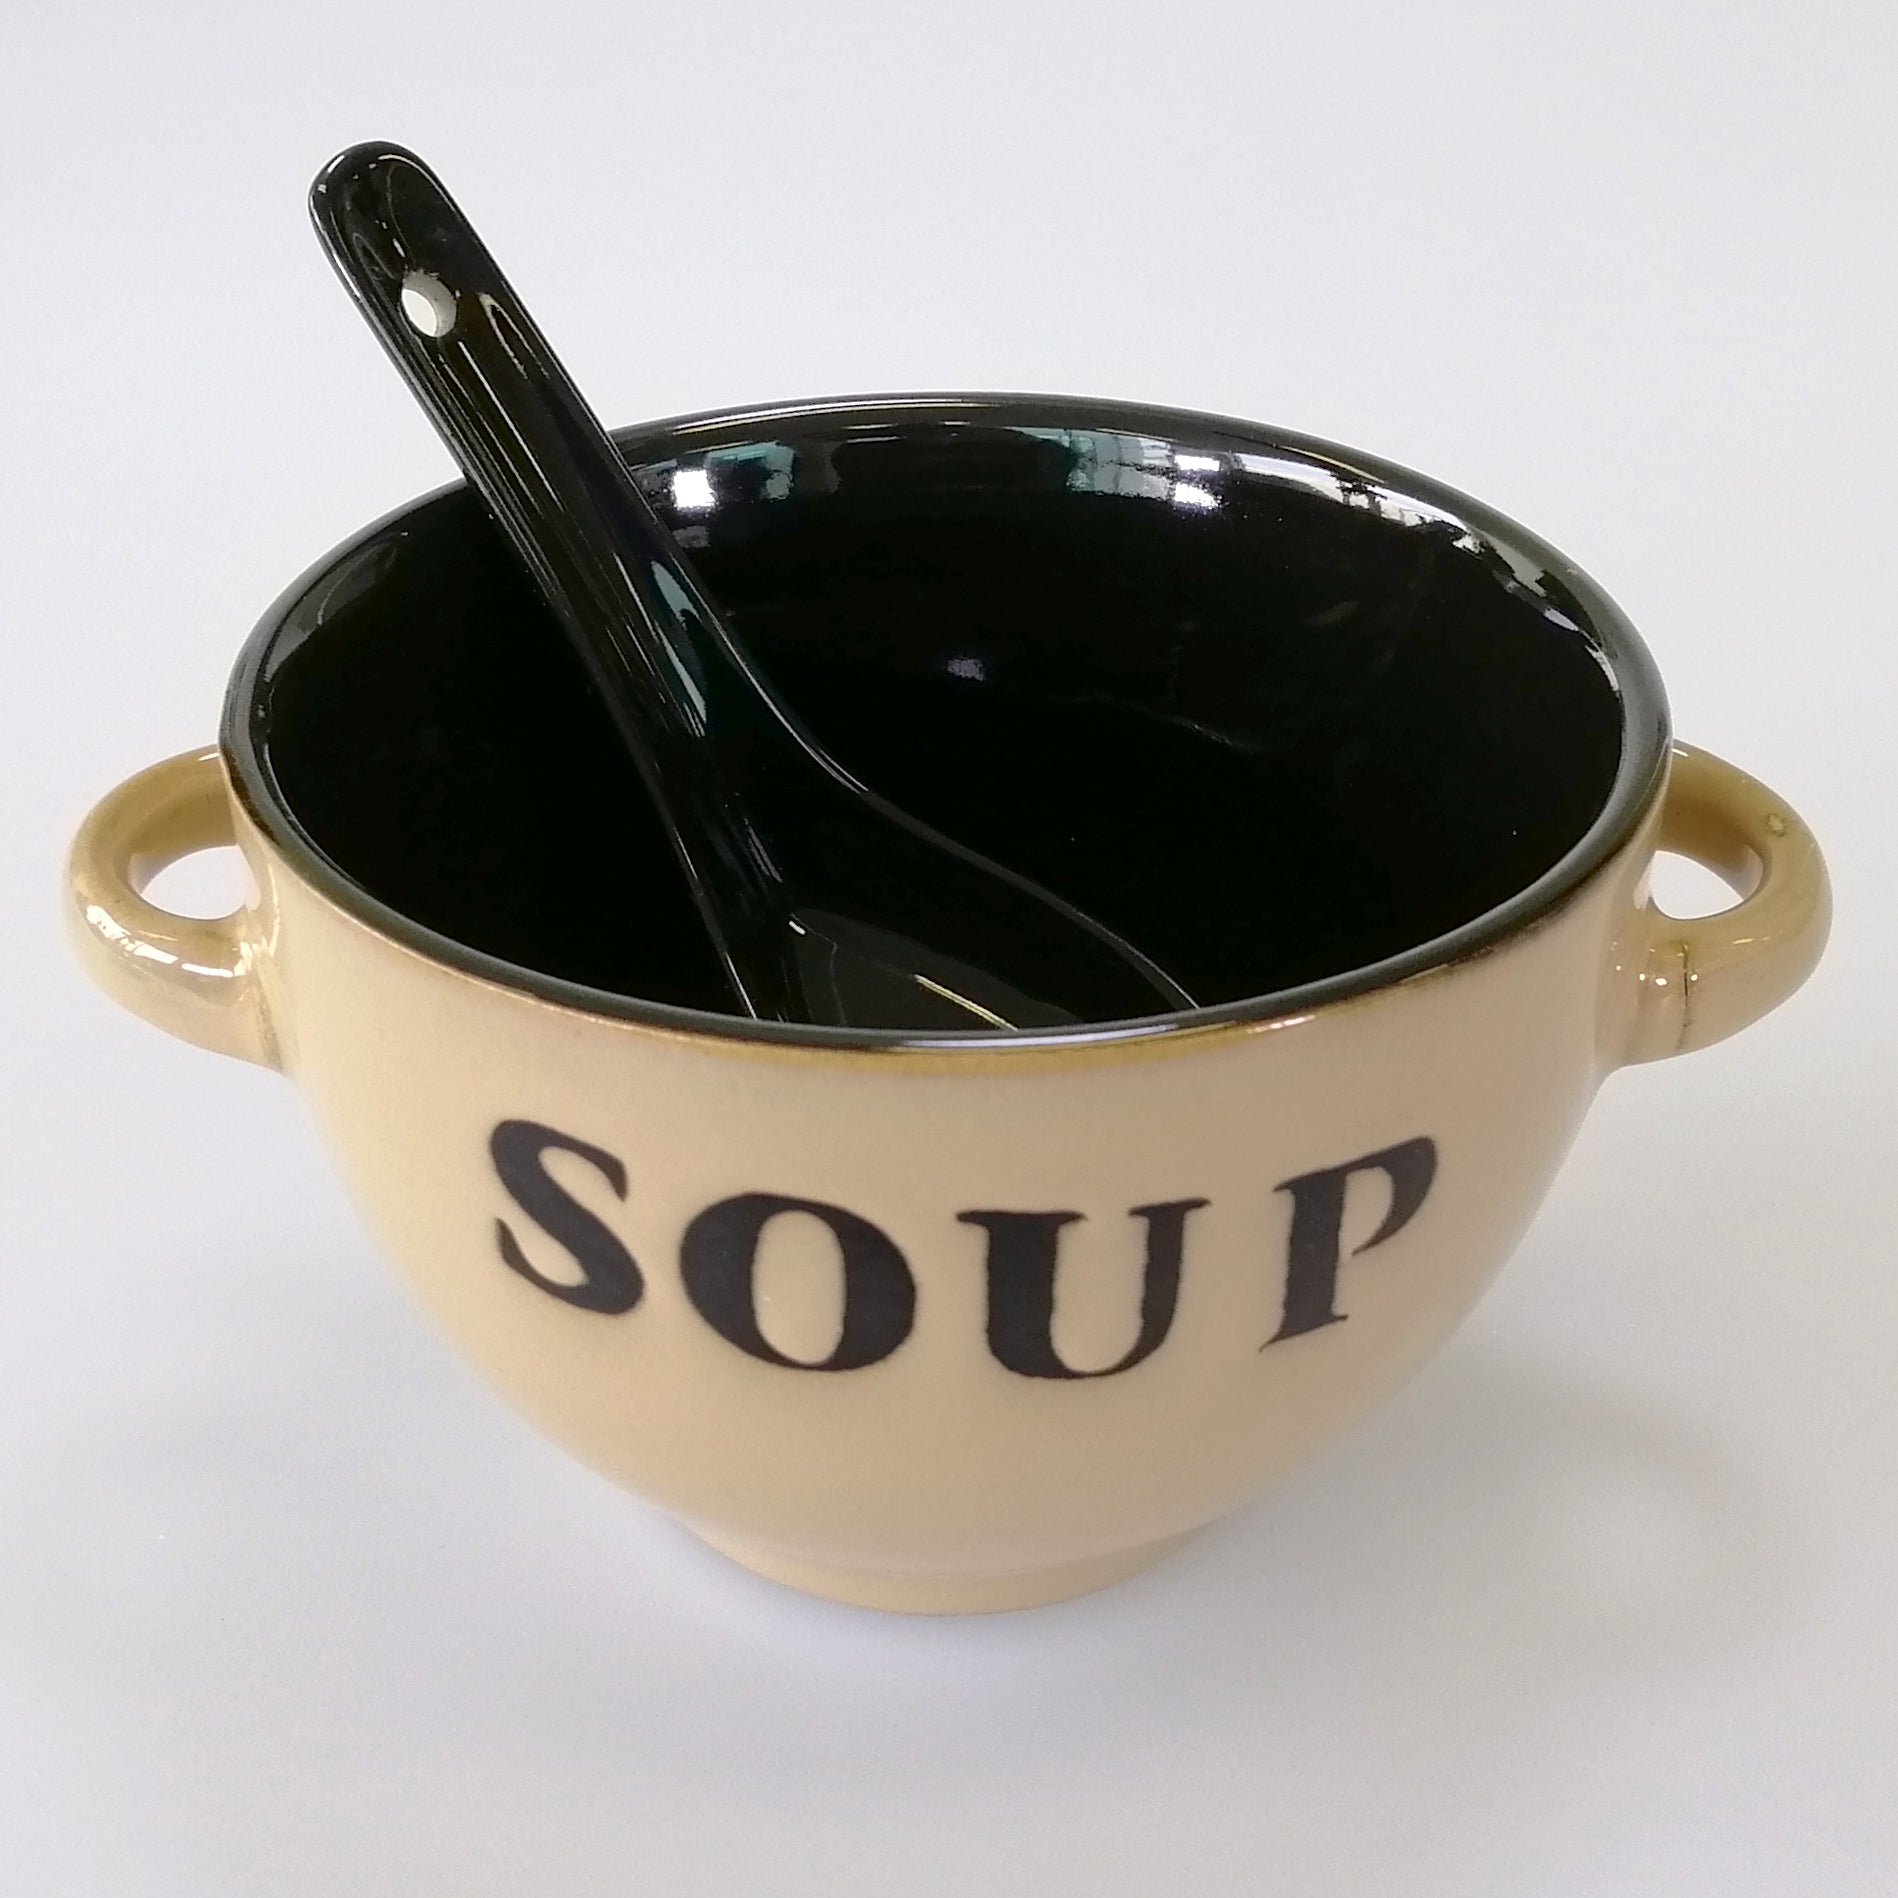 Soup Bowl & Spoon Set - Cream